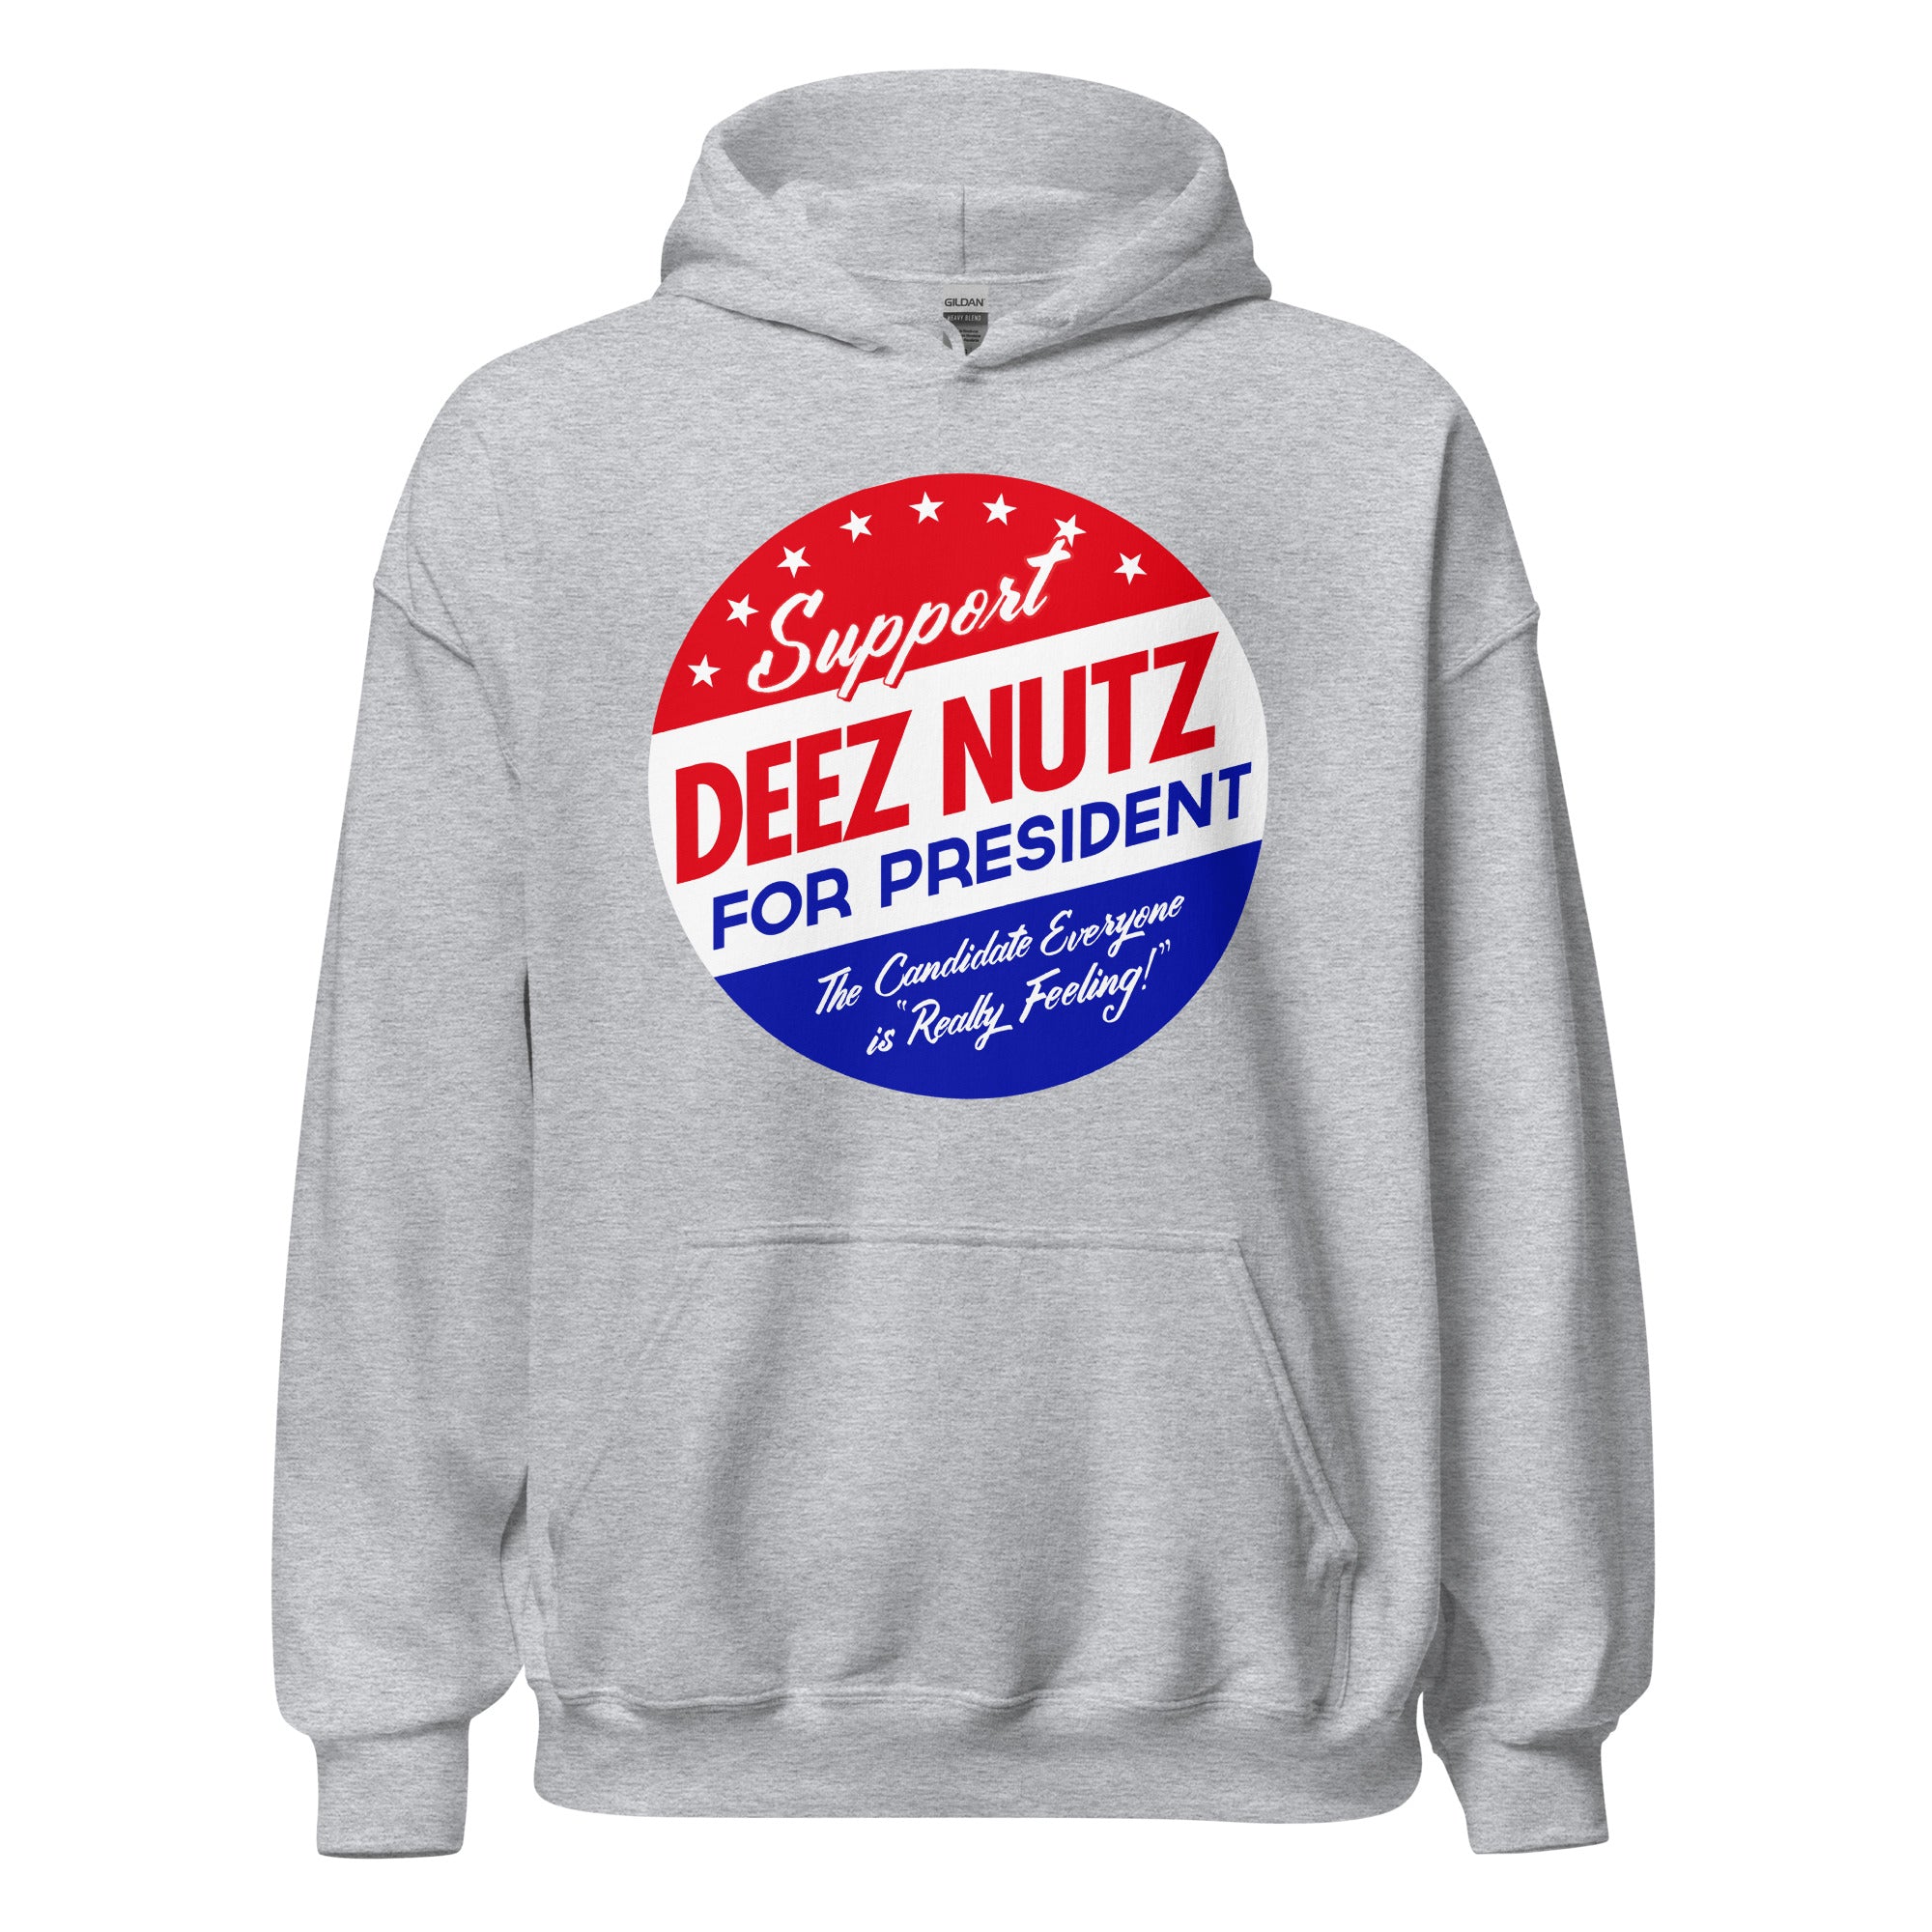 Deez Nuts for President Hoodie Sweatshirt